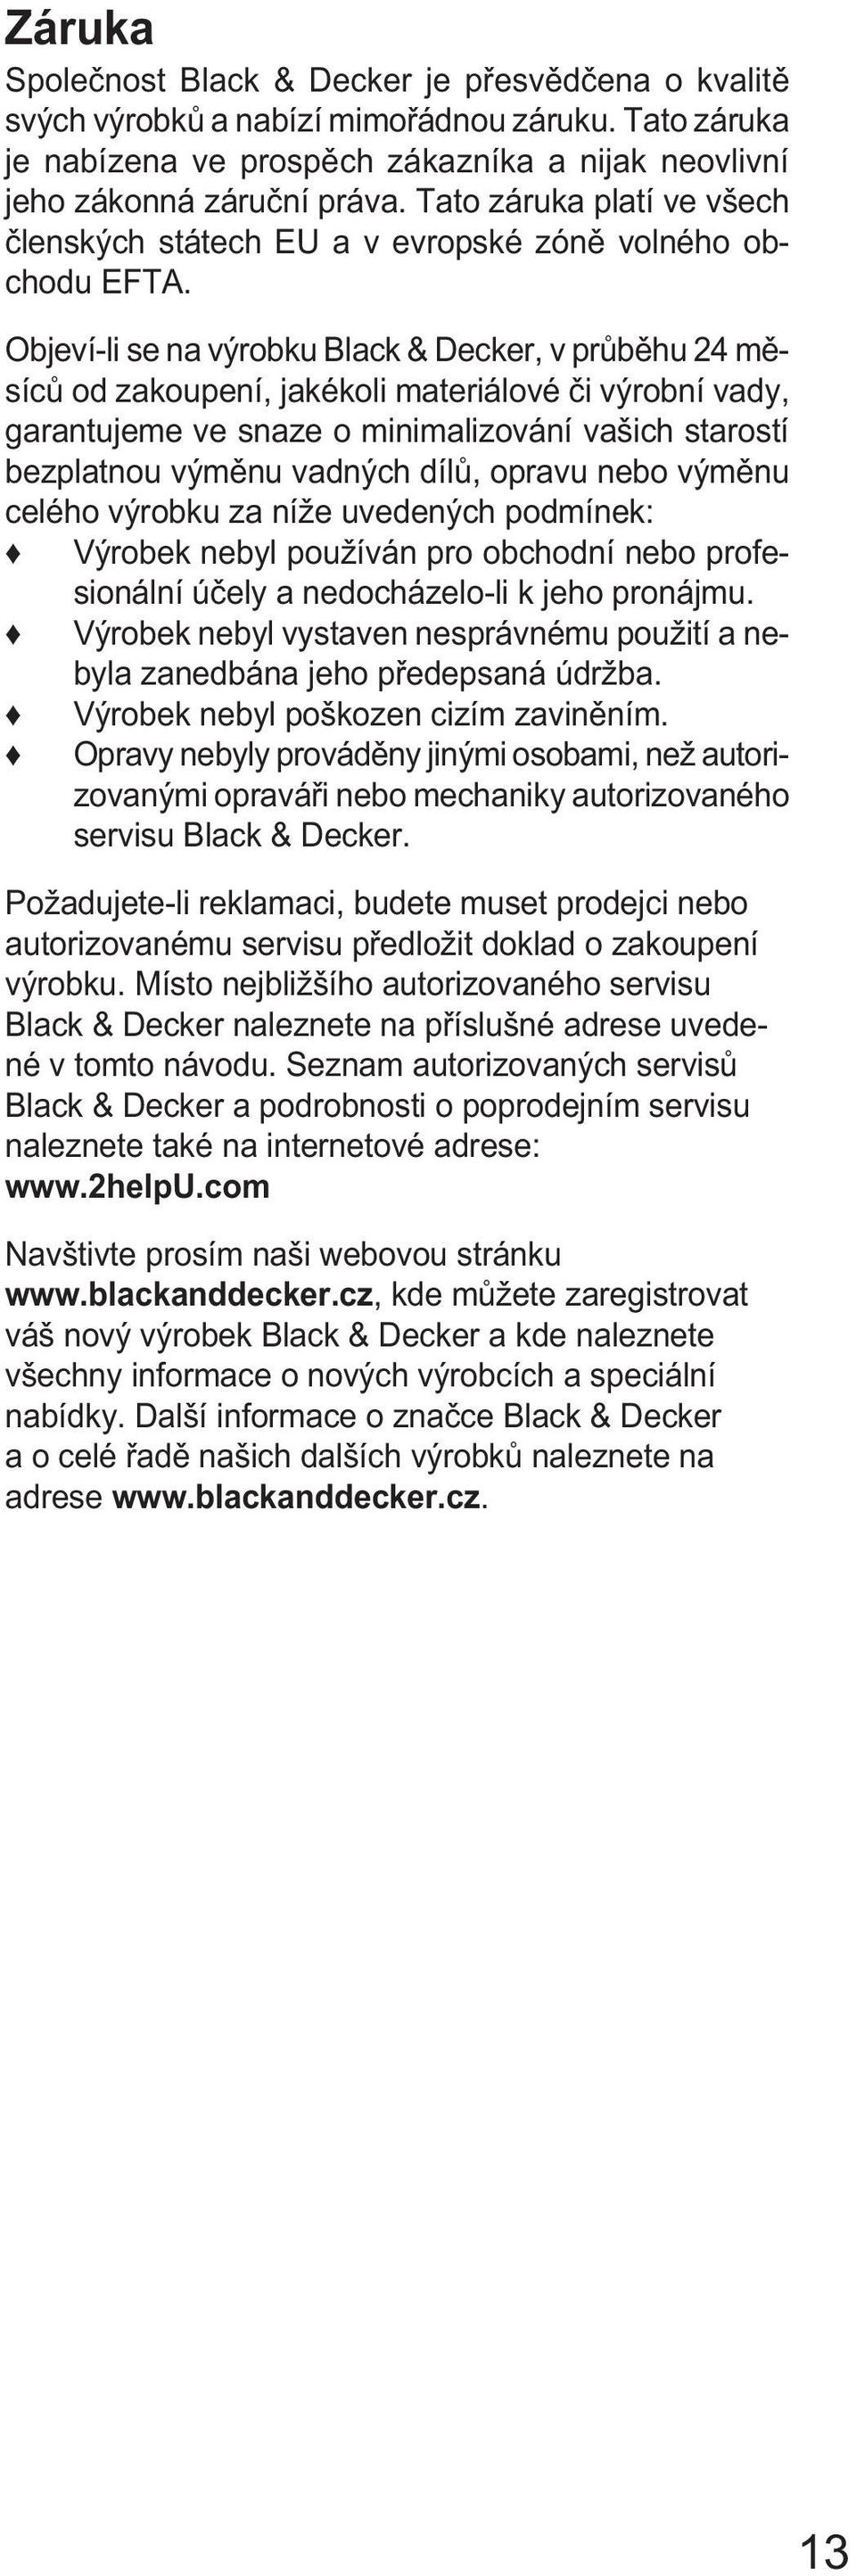 Objeví-li se na výrobku Black & Decker, v průběhu 24 měsíců od zakoupení, jakékoli materiálové či výrobní vady, garantujeme ve snaze o minimalizování vašich starostí bezplatnou výměnu vadných dílů,